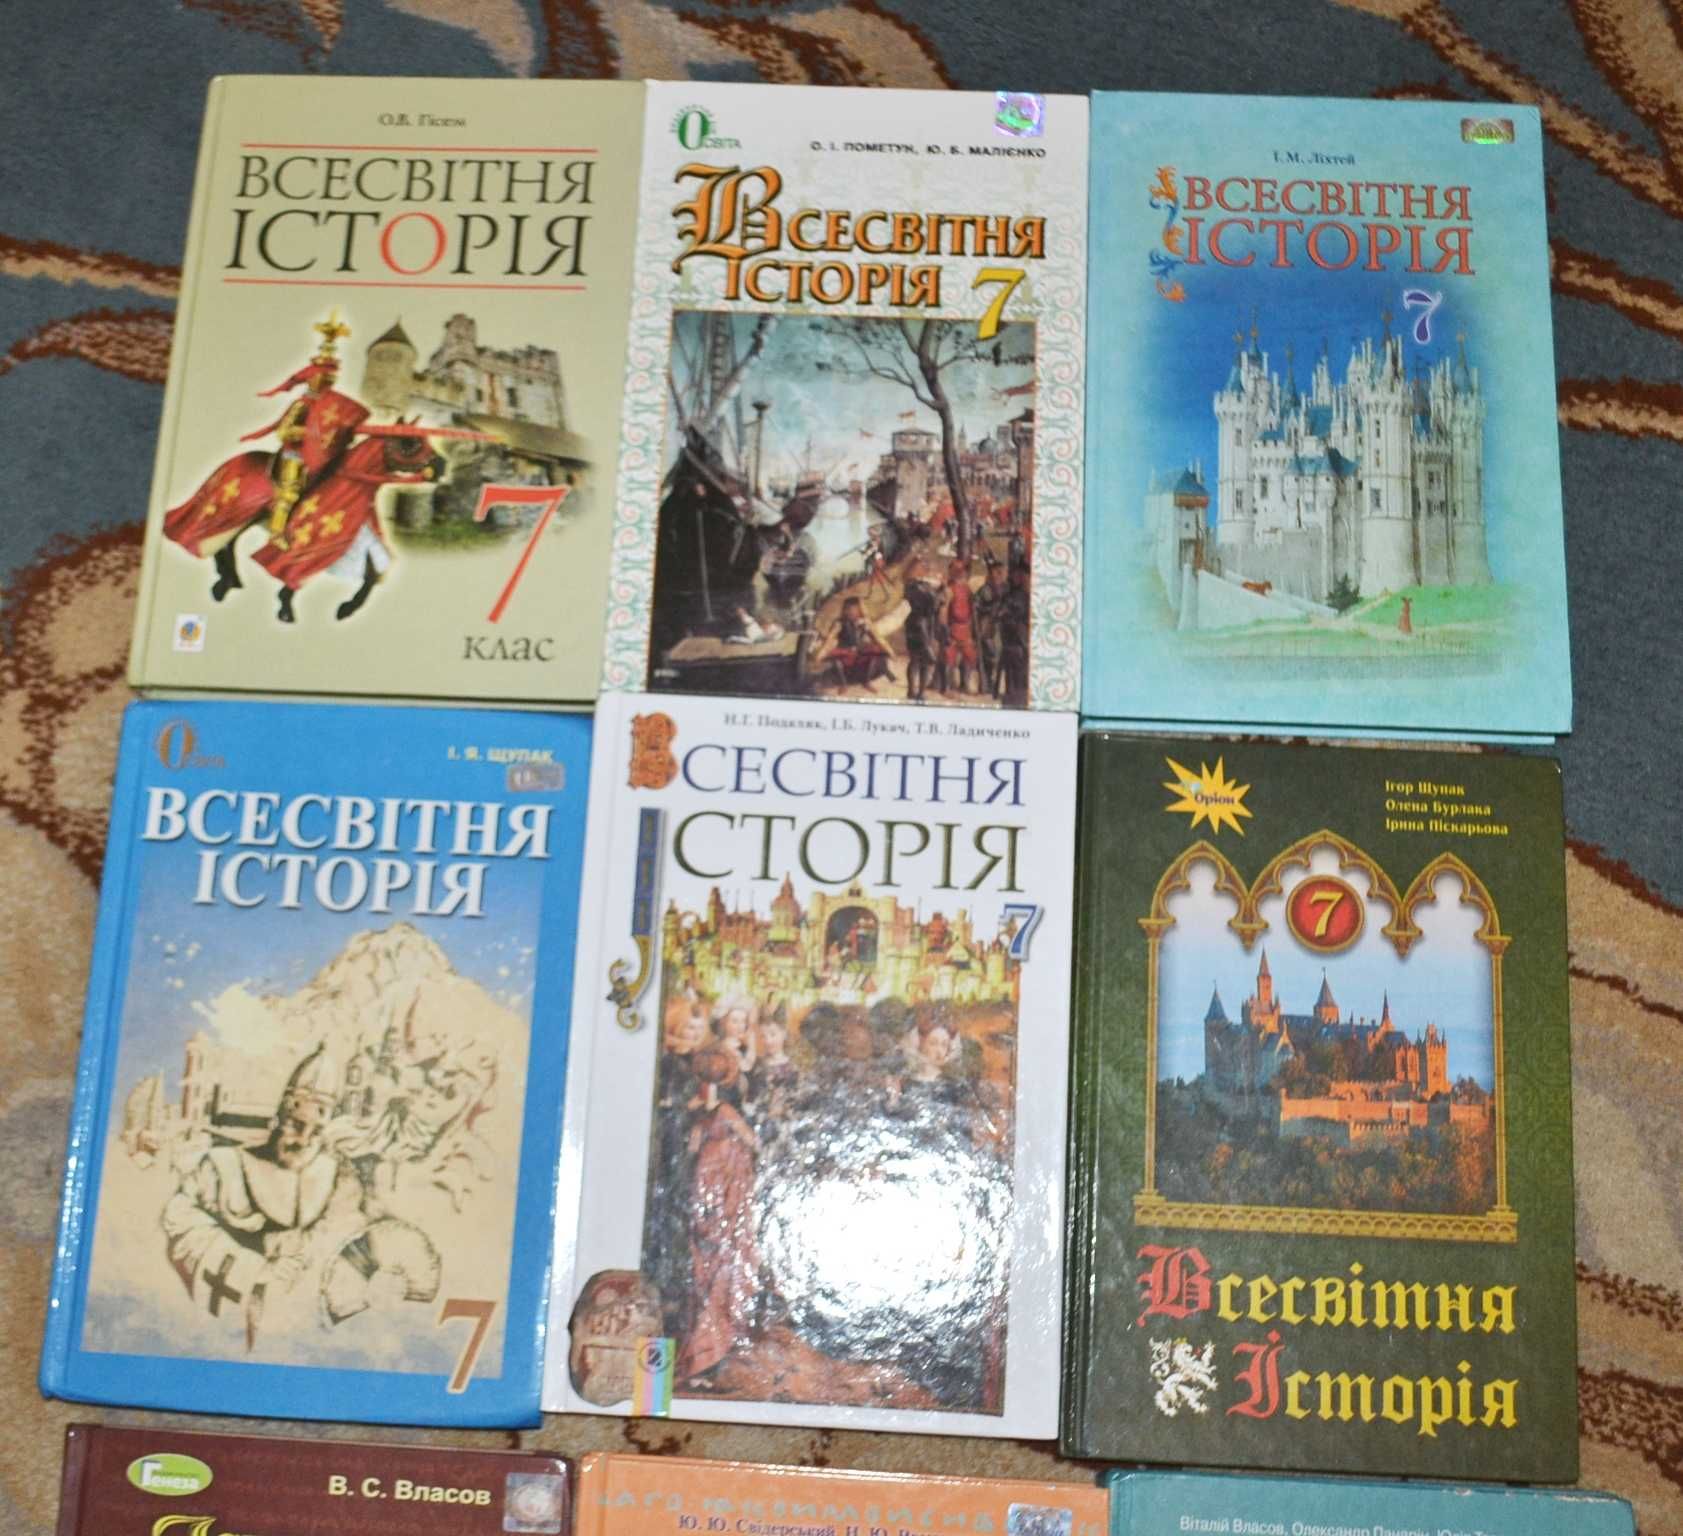 Підручники для 7 класу Історія України,всесвітня історія